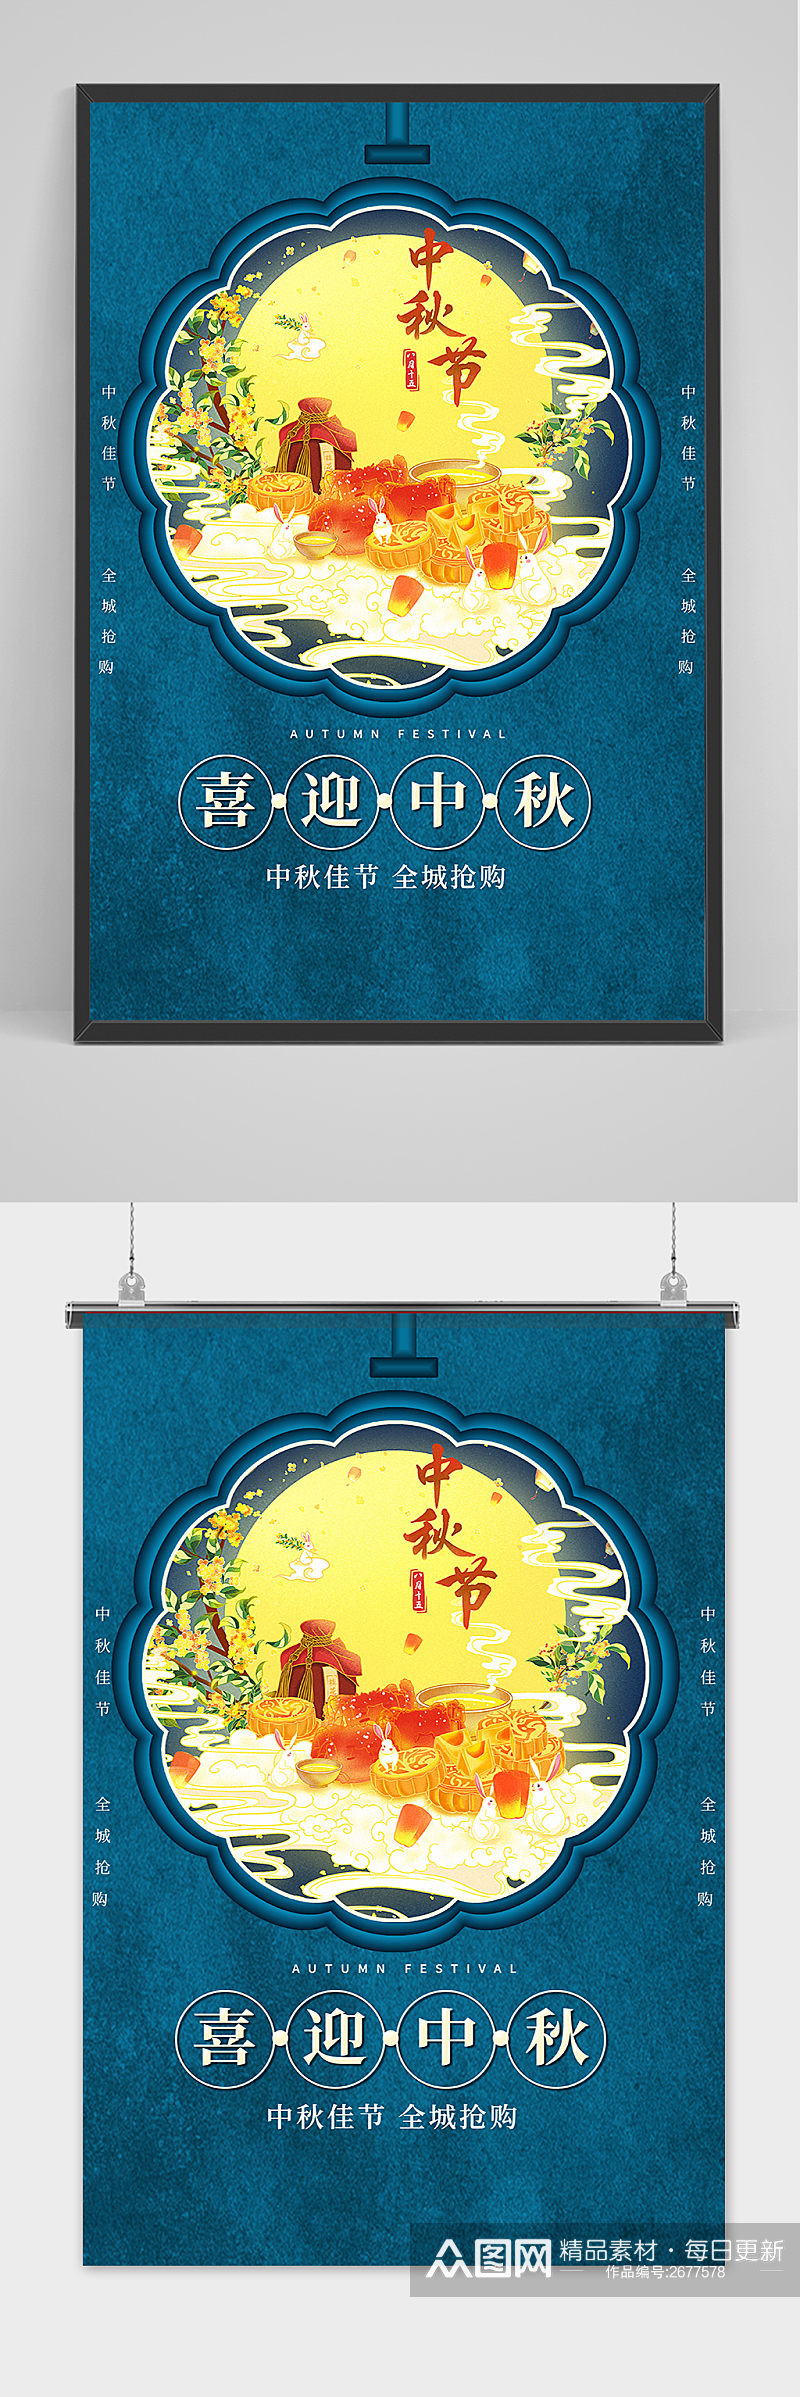 创意传统中国风喜迎中秋节海报素材